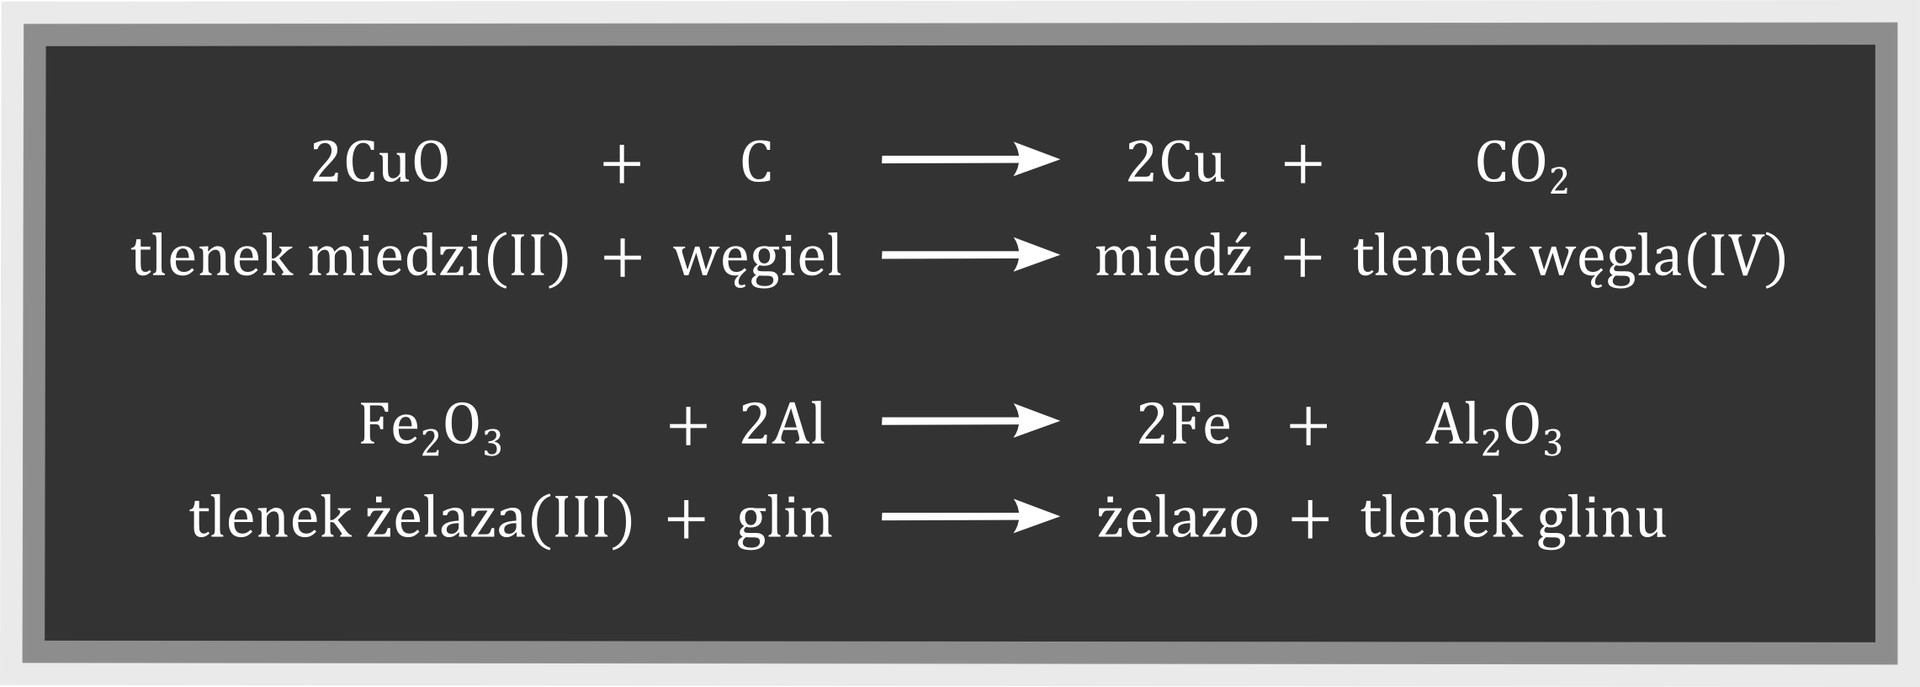 Ilustracja przedstawia czarną tablicę. Na niej białą czcionką zapisane są dwa równania reakcji chemicznych, każde w postaci symboli, a także słownie. Pierwsza reakcja: 2CuO+C→2Cu+CO2, a poniżej: tlenek miedzi dwa plus węgiel strzałka w prawo miedź plus tlenek węgla cztery. Druga reakcja: Fe2O3+2Al→2Fe+Al2O3, a poniżej: tlenek żelaza trzy plus glin strzałka w prawo żelazo plus tlenek glinu.